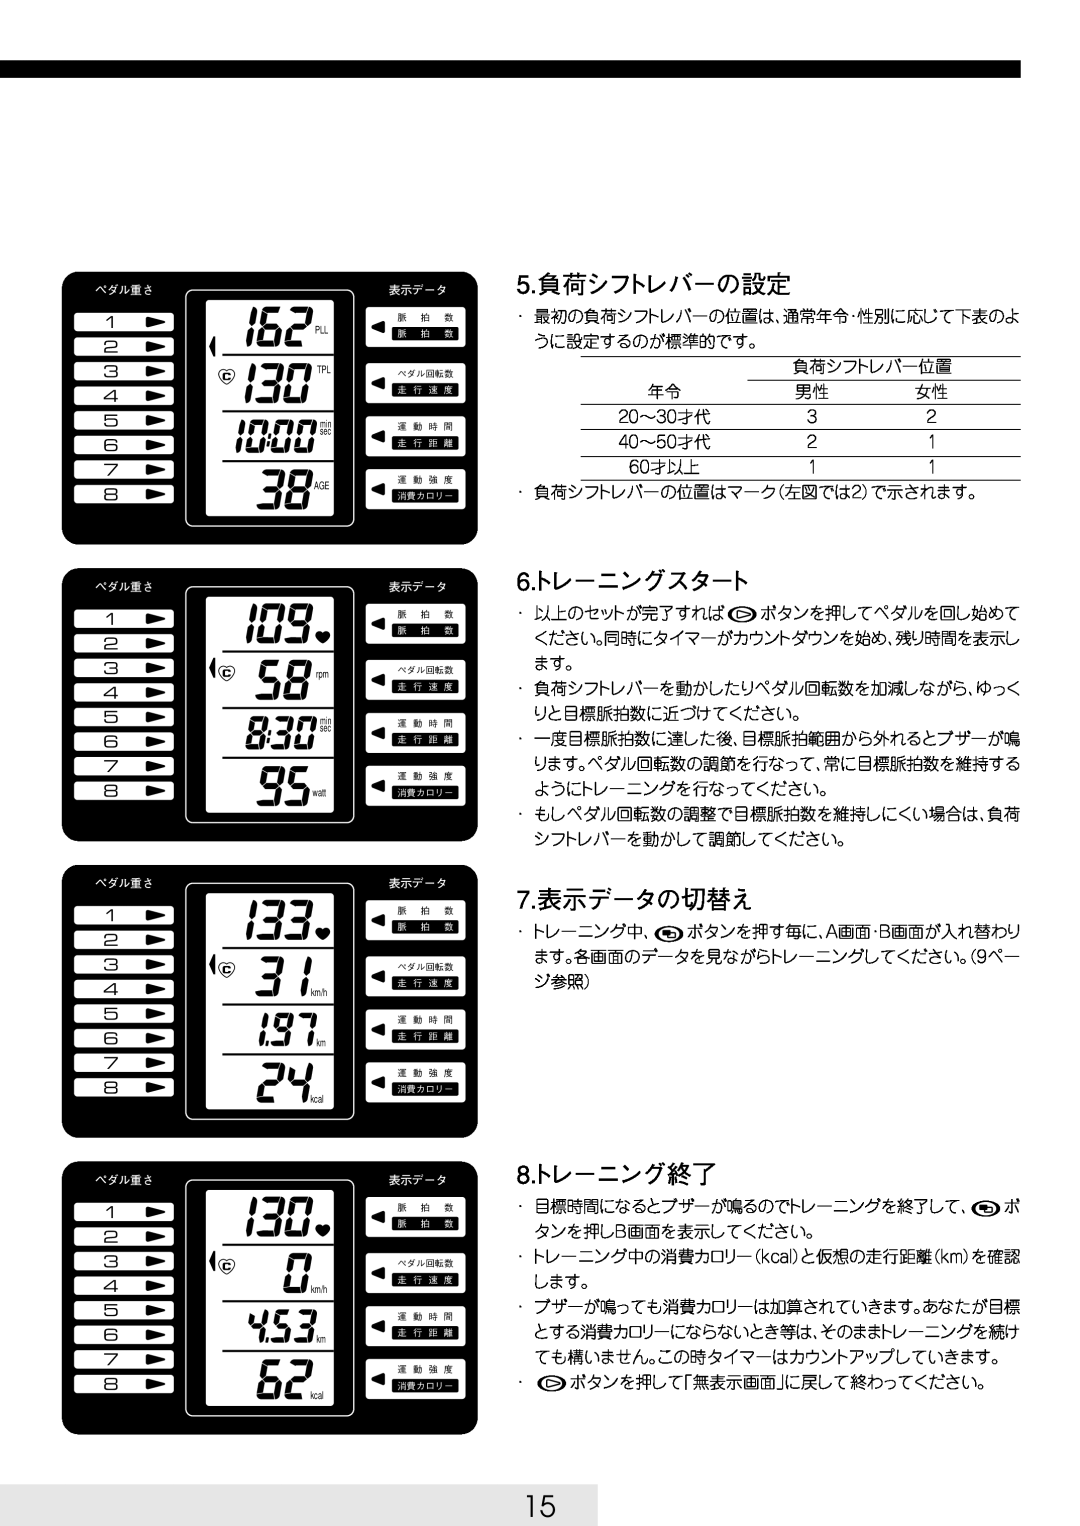 Cateye EC-32OO manual 5.負荷シフトレバーの設定, 6ト. レーニングスタート, 7.表示データの切替え, 8ト. レーニング終了 